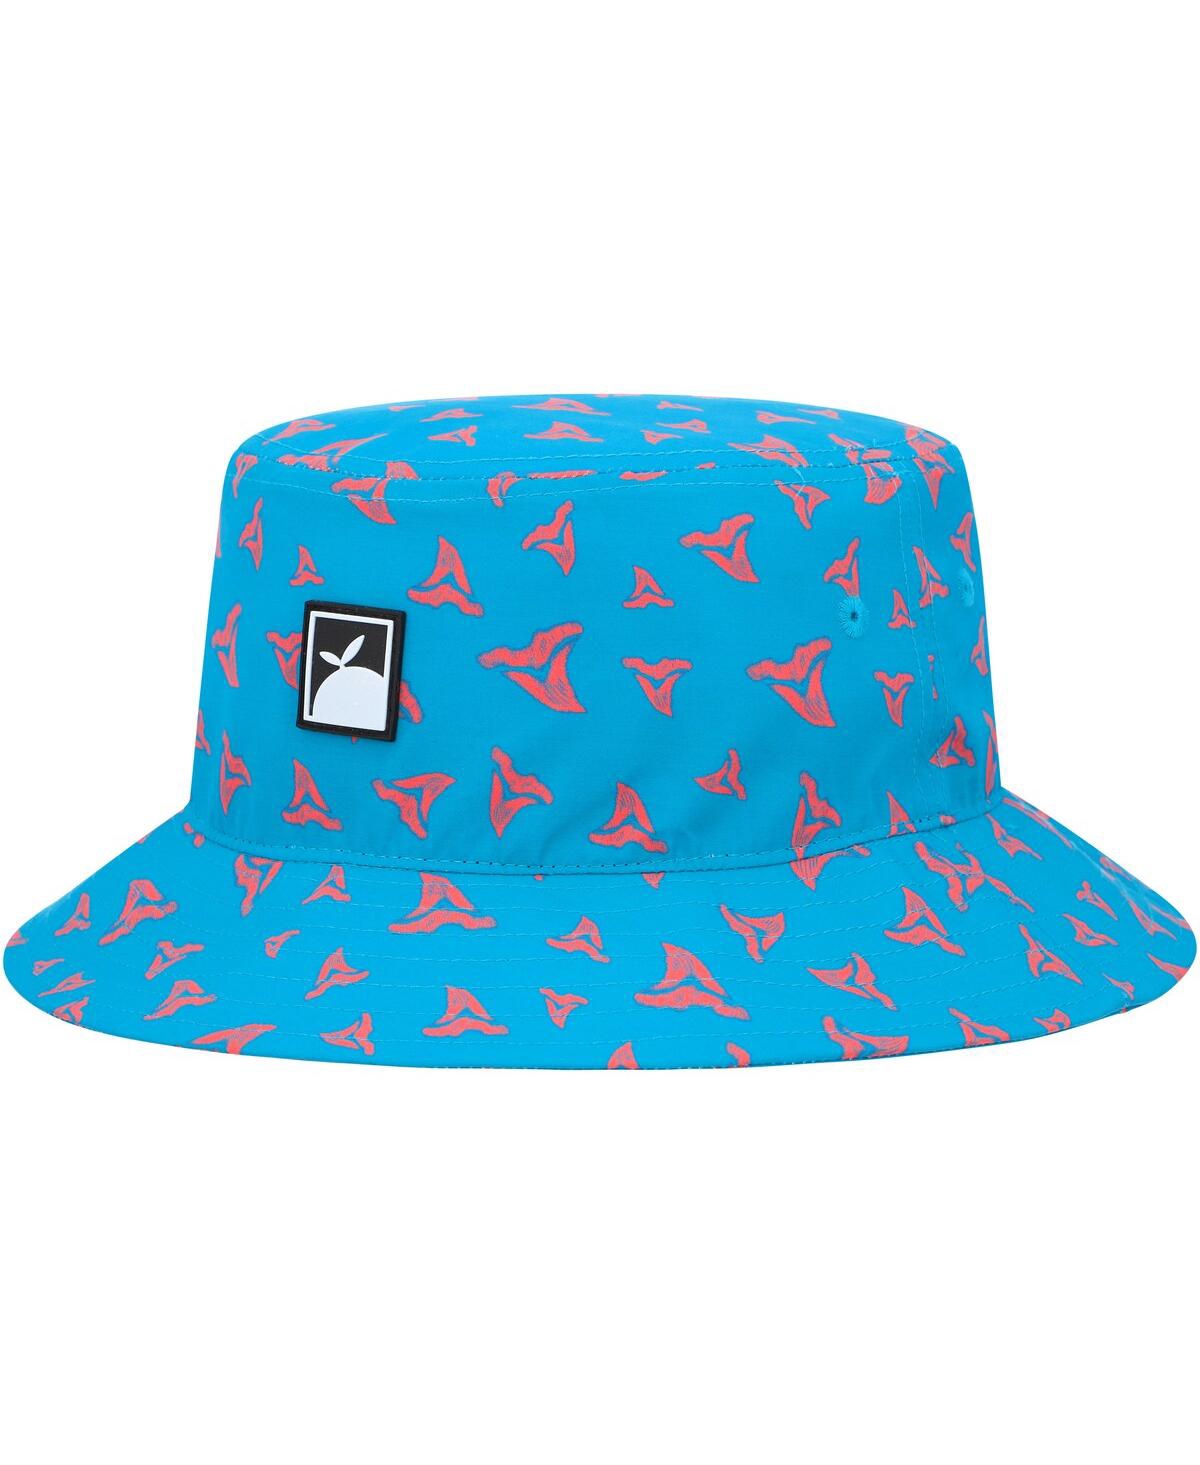 Flomotion Men's  Blue Toothy Bucket Hat